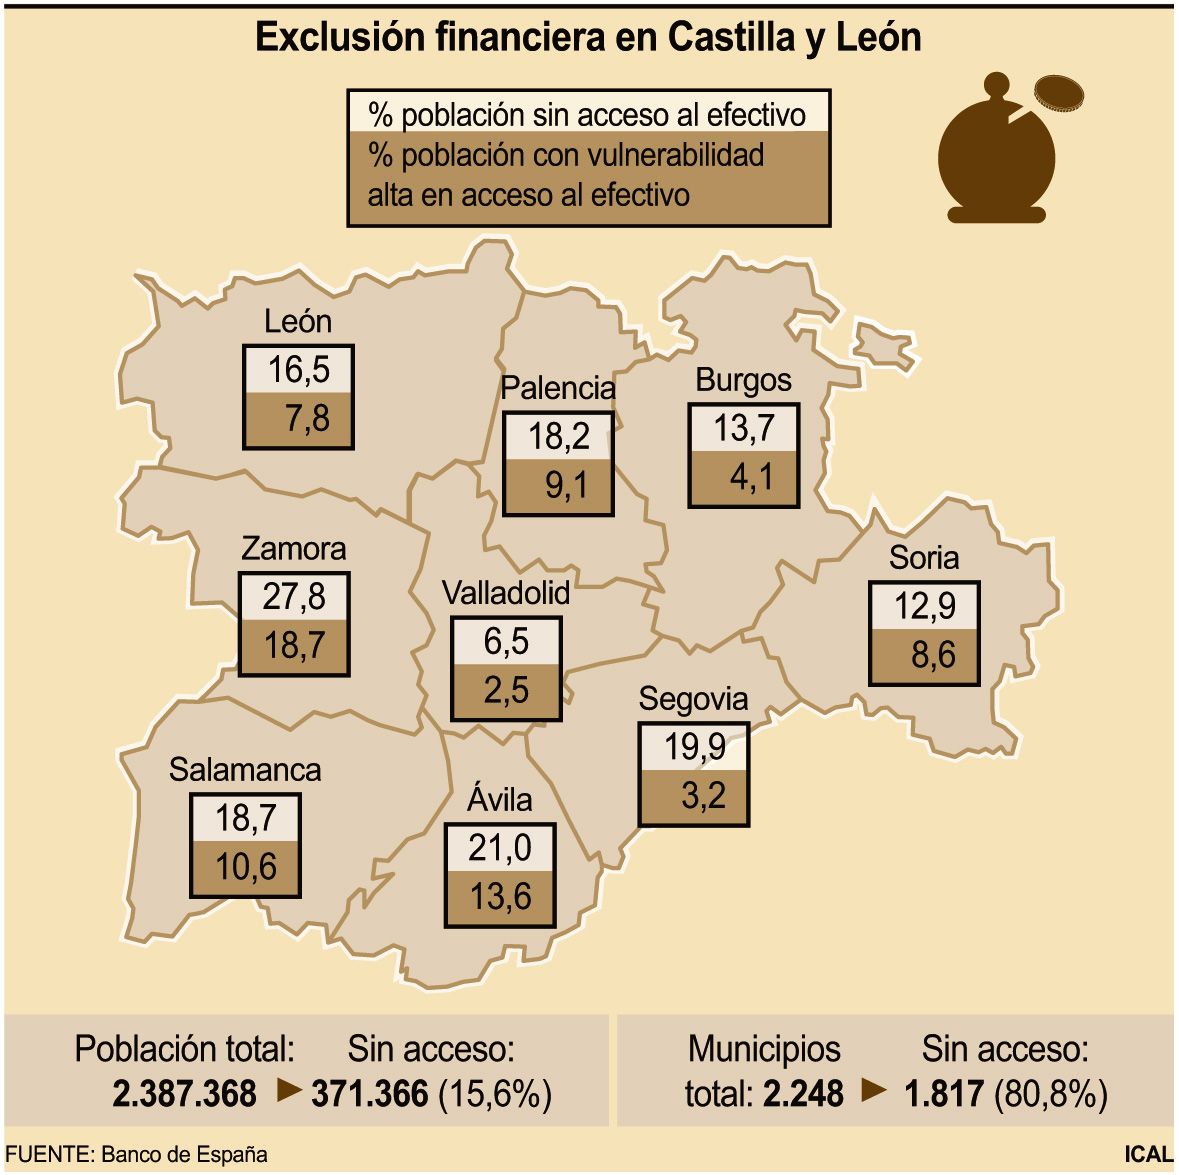 Exclusión financiera en Castilla y León.